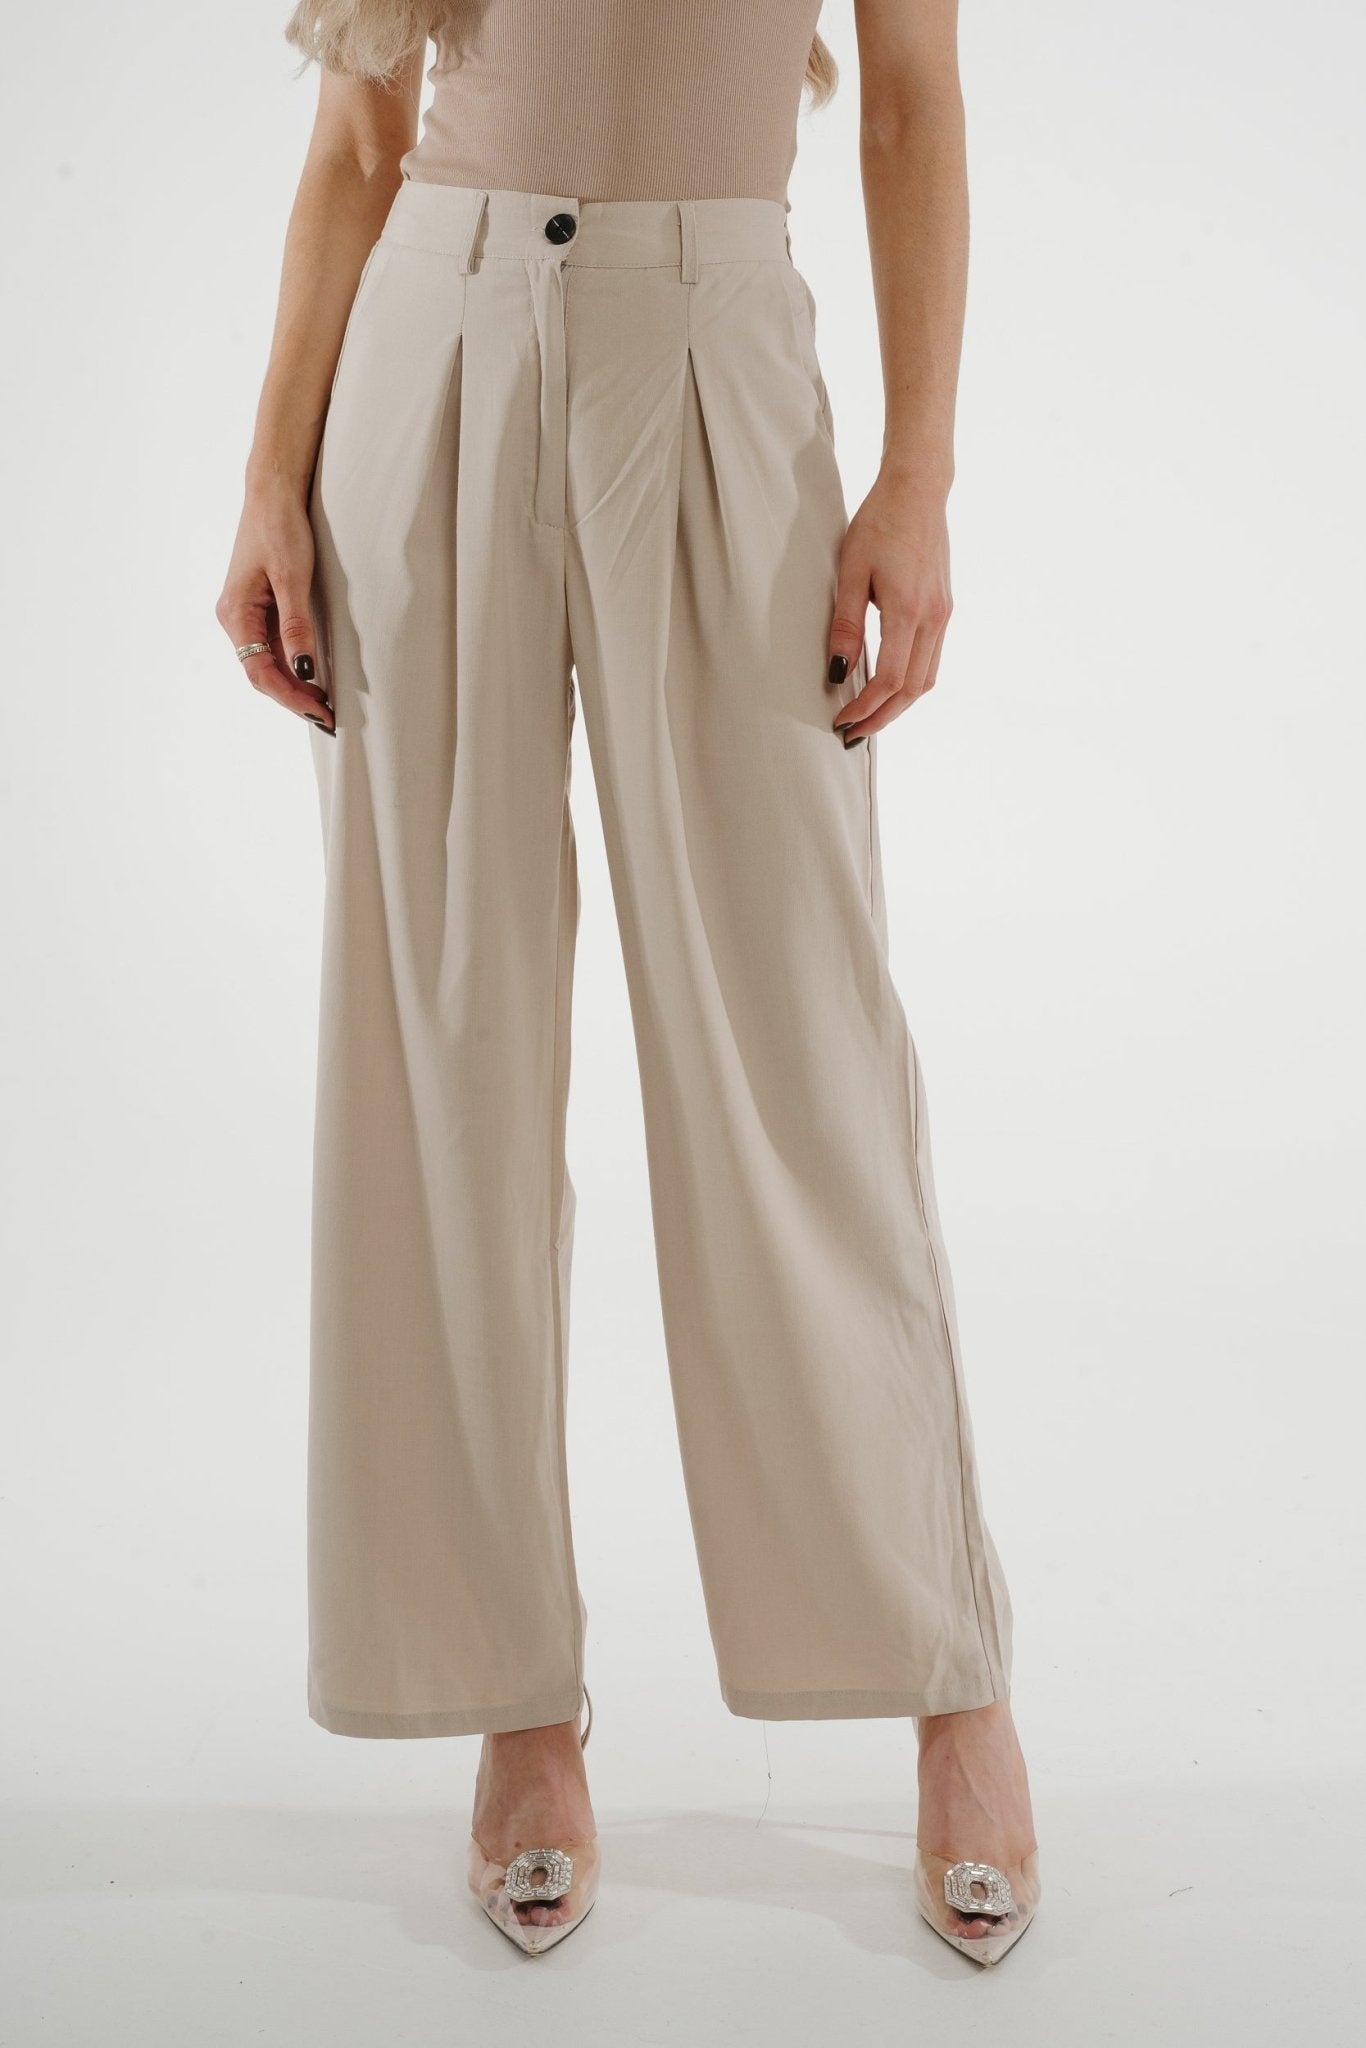 Jane Pleat Front Trouser In Neutral - The Walk in Wardrobe